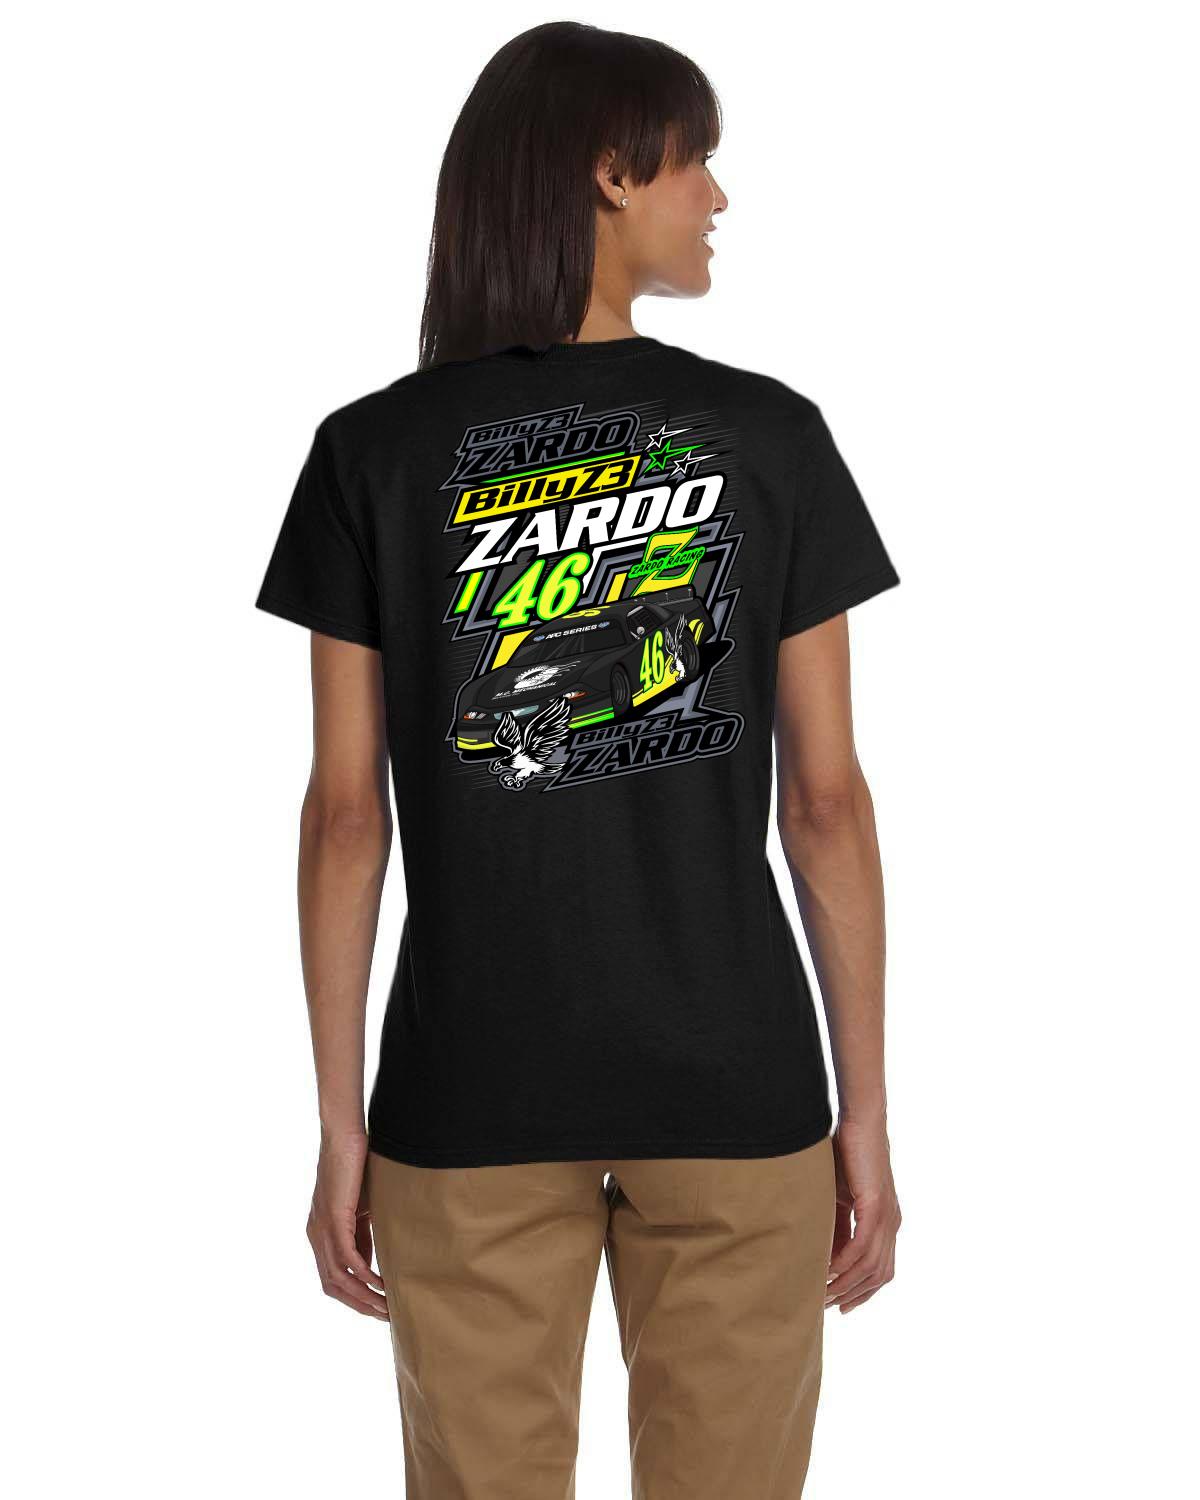 BILLY ZARDO Z3 PLM Women's t-shirt